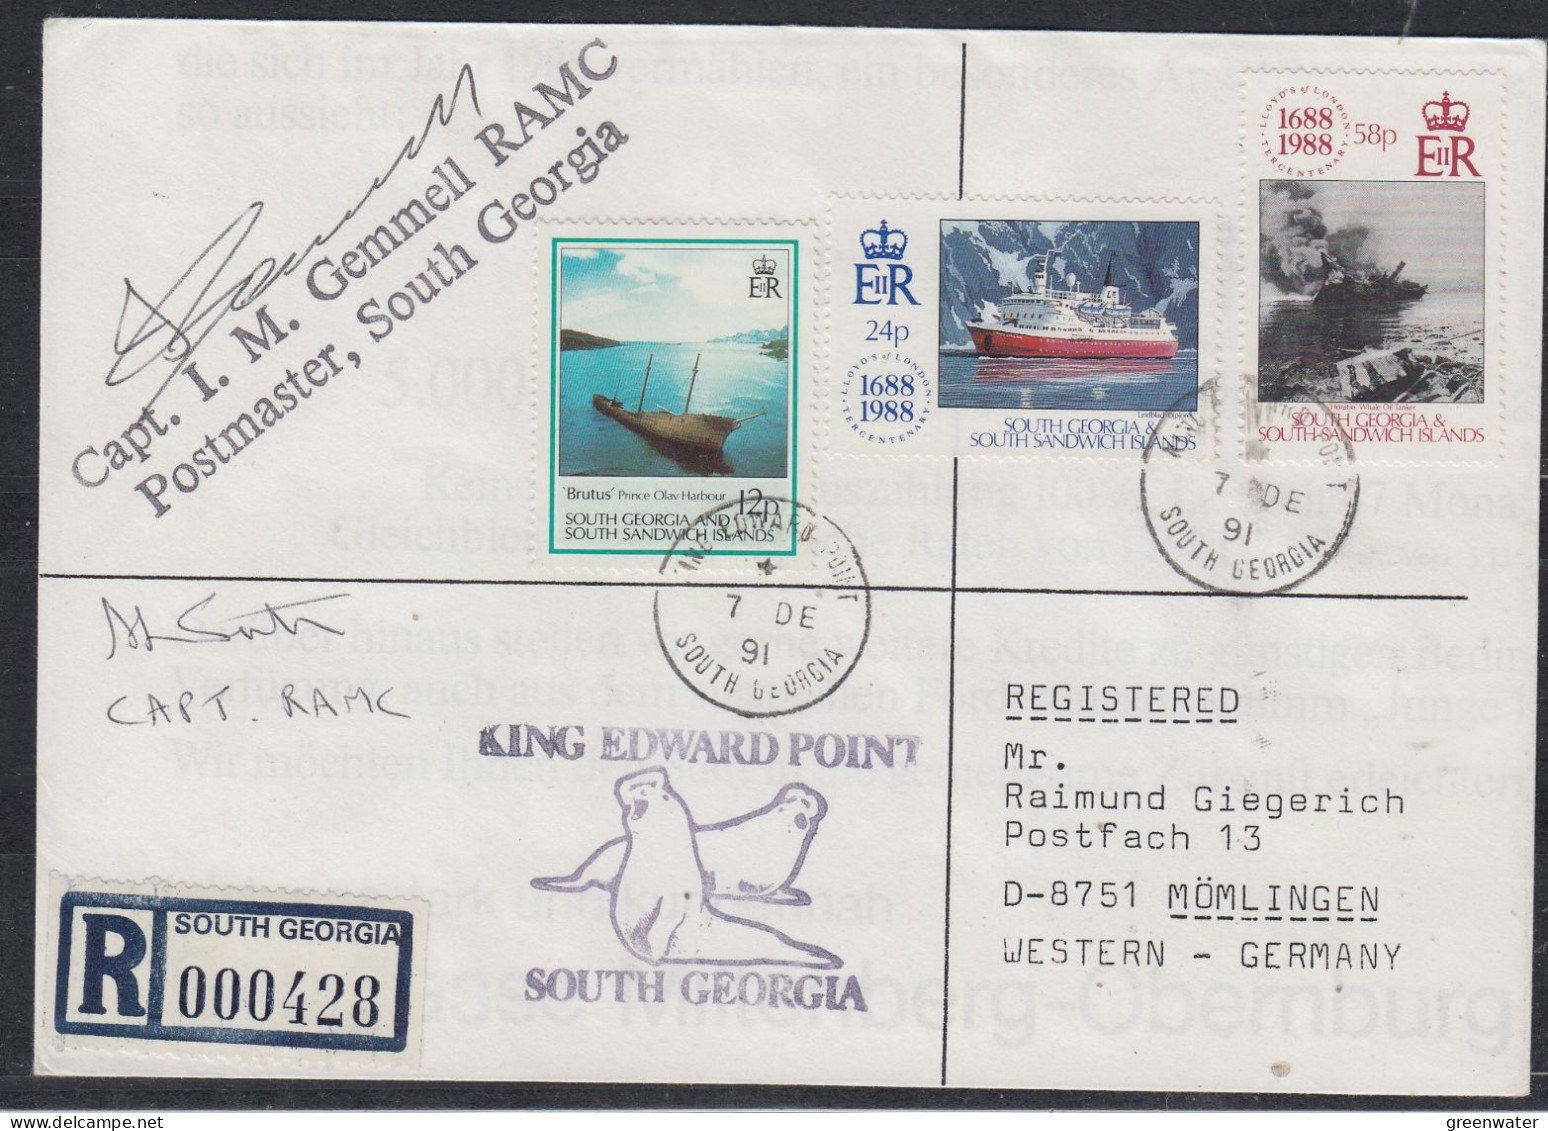 South Georgia & South Sandwich Islands 1991 Registered Cover 2  Signatures  Ca 7 DE 1991 (FG178) - South Georgia